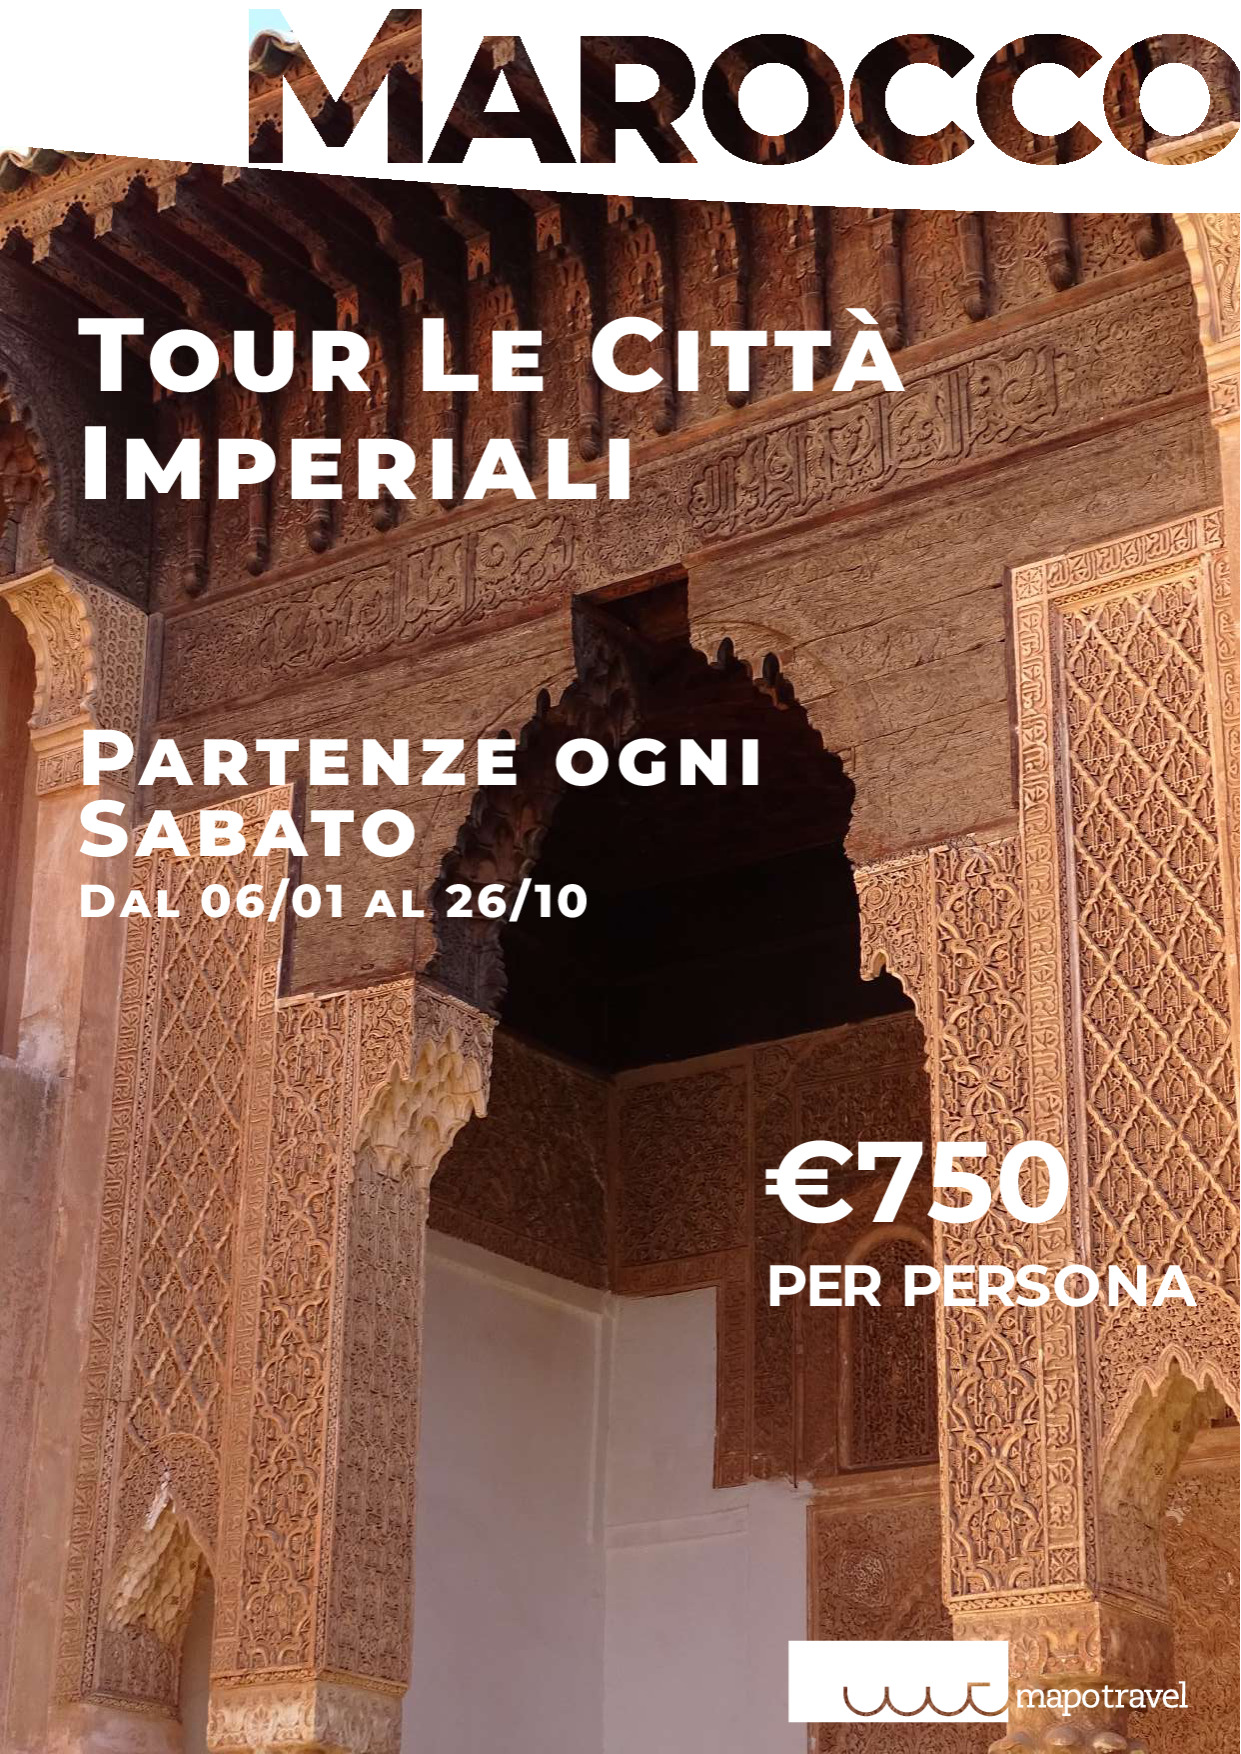 Marocco - Tour le città imperiali